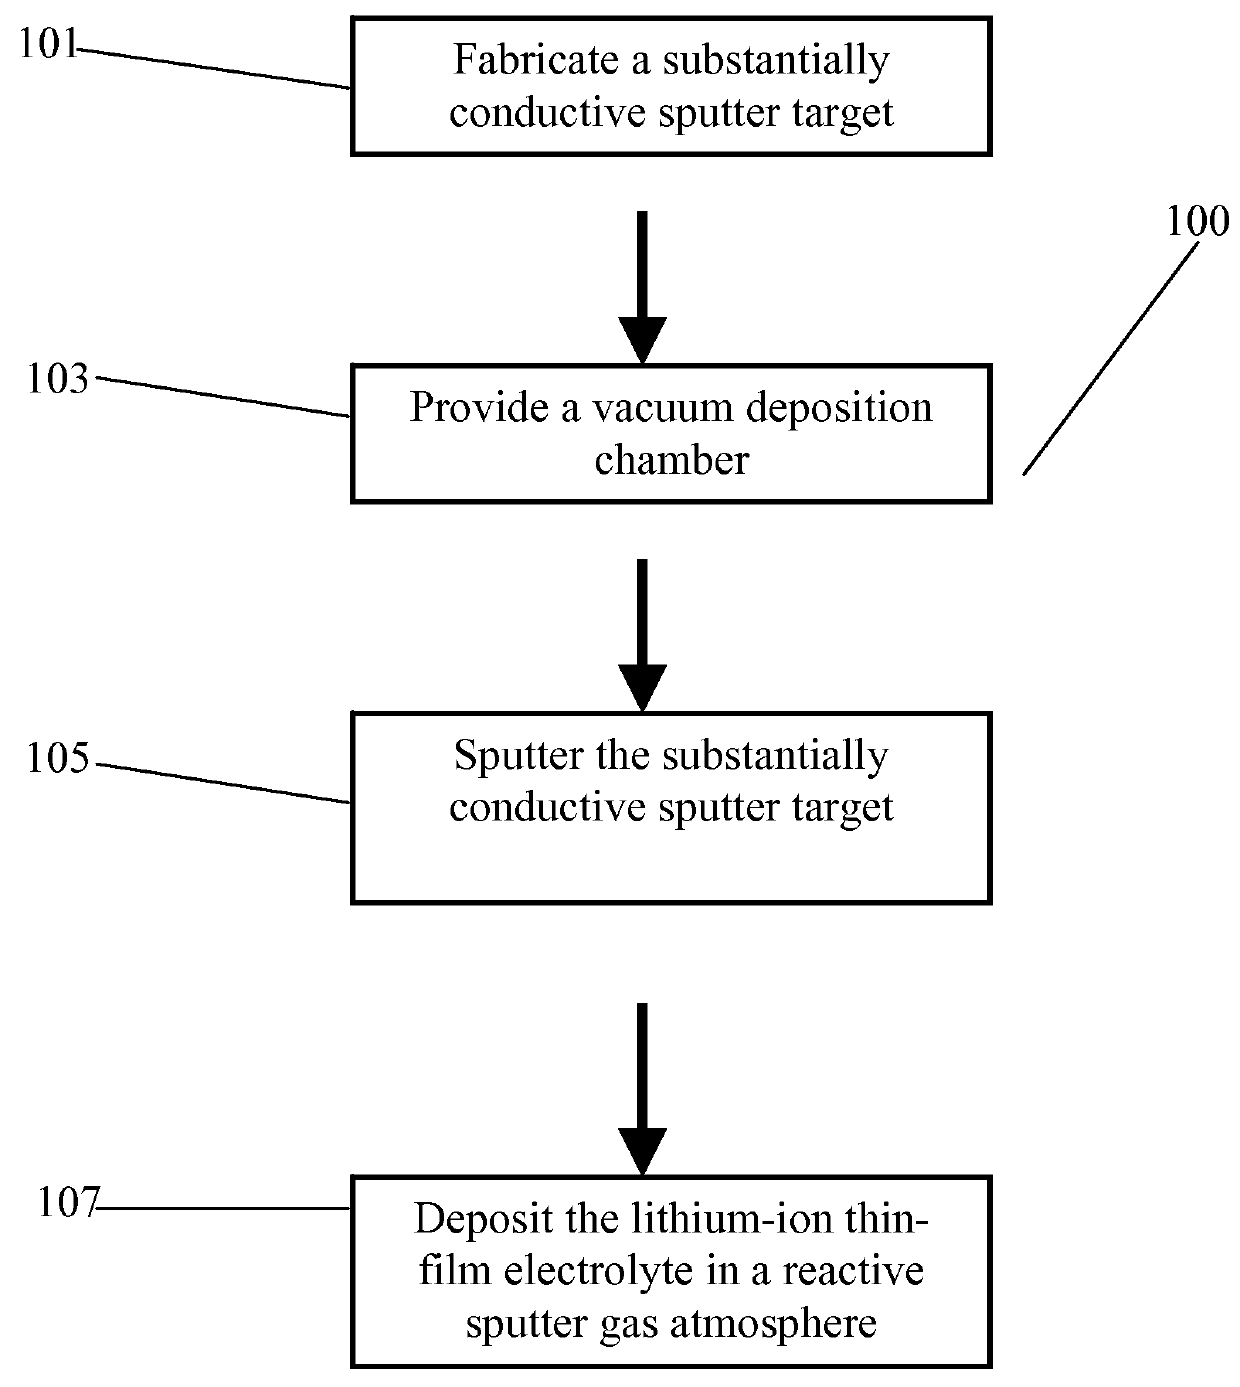 Method for sputter targets for electrolyte films